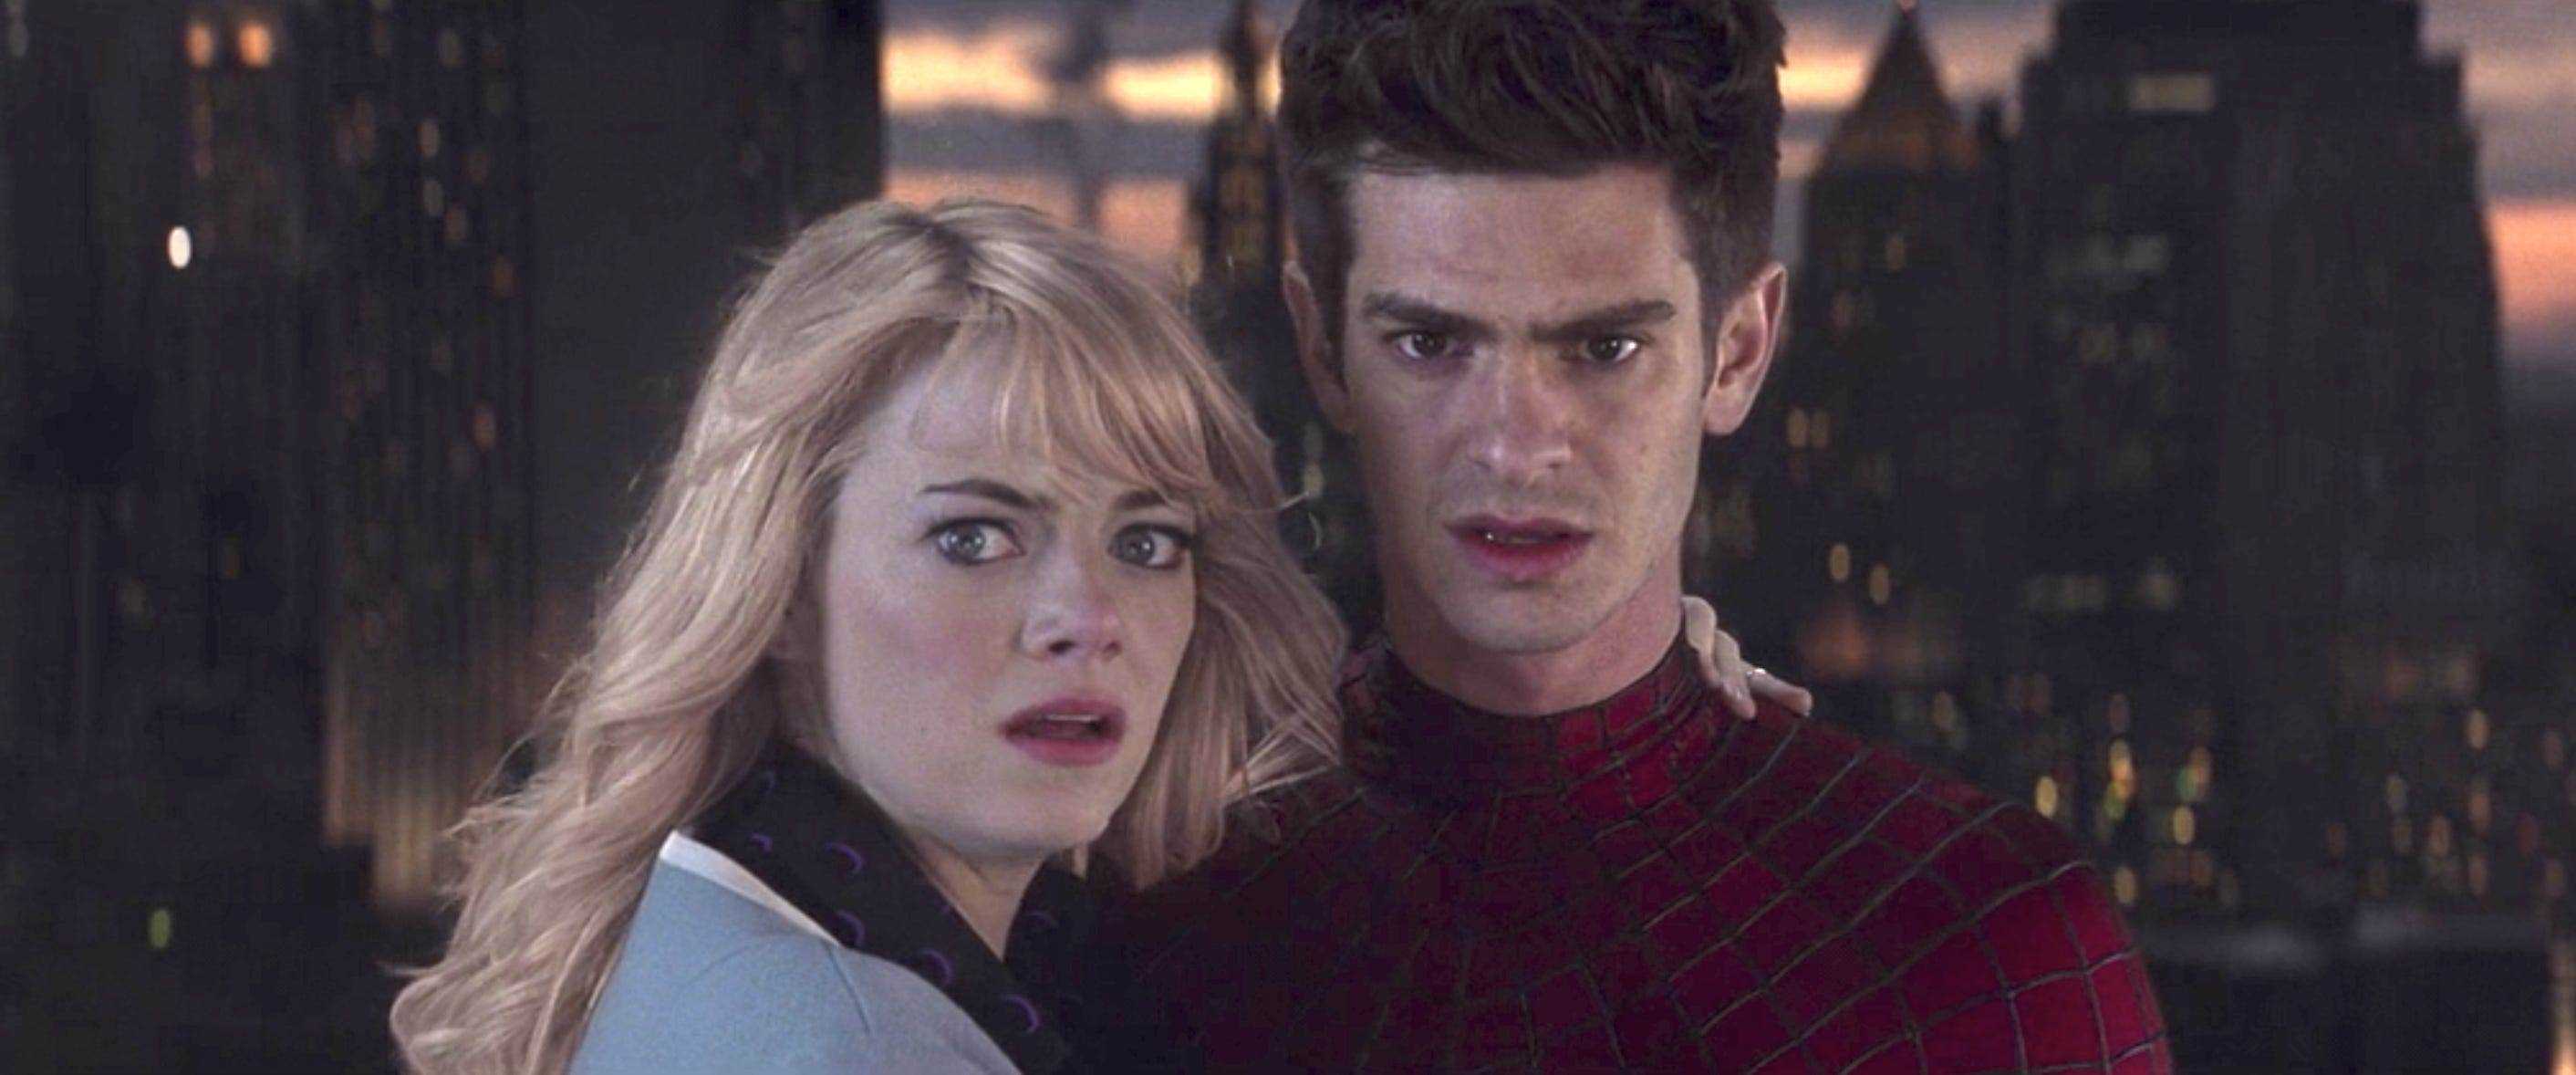 Emma Stone als Gwen Stacy und Andrew Garfield als Peter Parker/Spider-Man in „The Amazing Spider-Man 2“